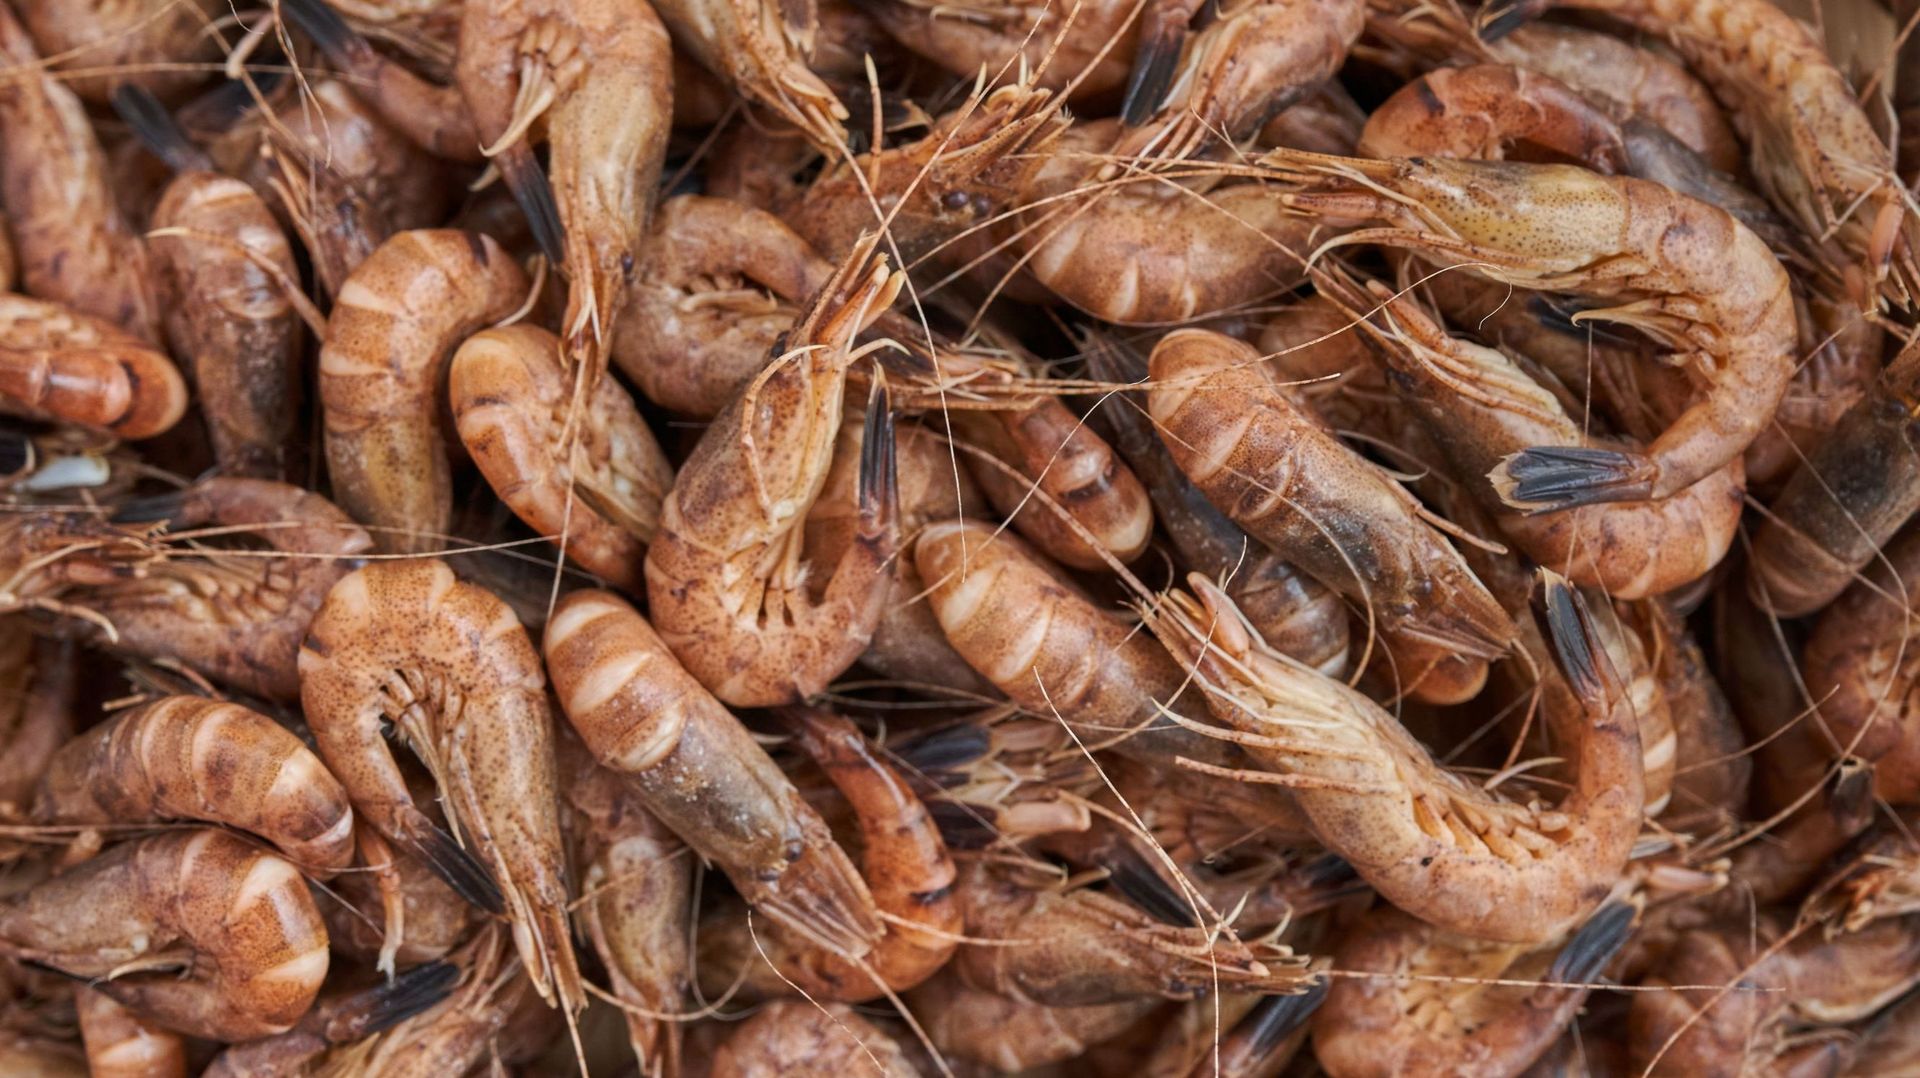 Les crevettes de la mer du Nord se font rares dans les supermarchés et se vendent à prix d’or : jusqu’à 100 euros du kilo – rtbf.be